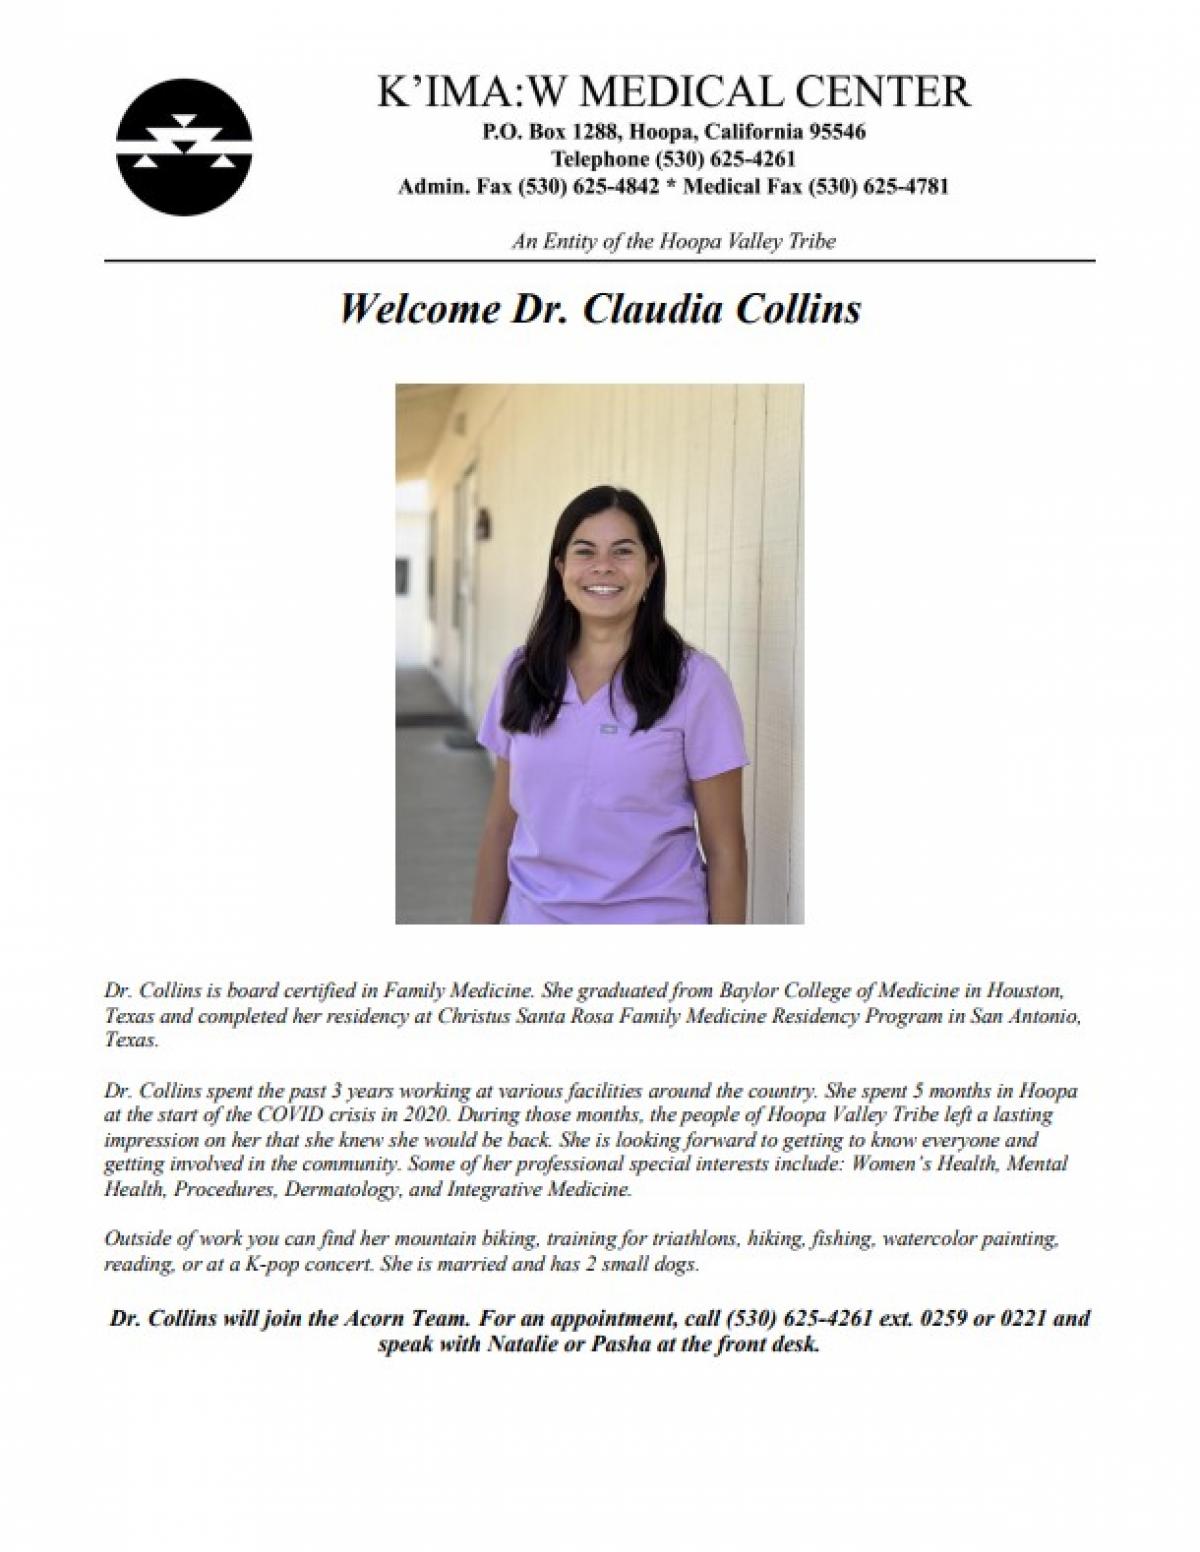 Dr. Claudia Collins